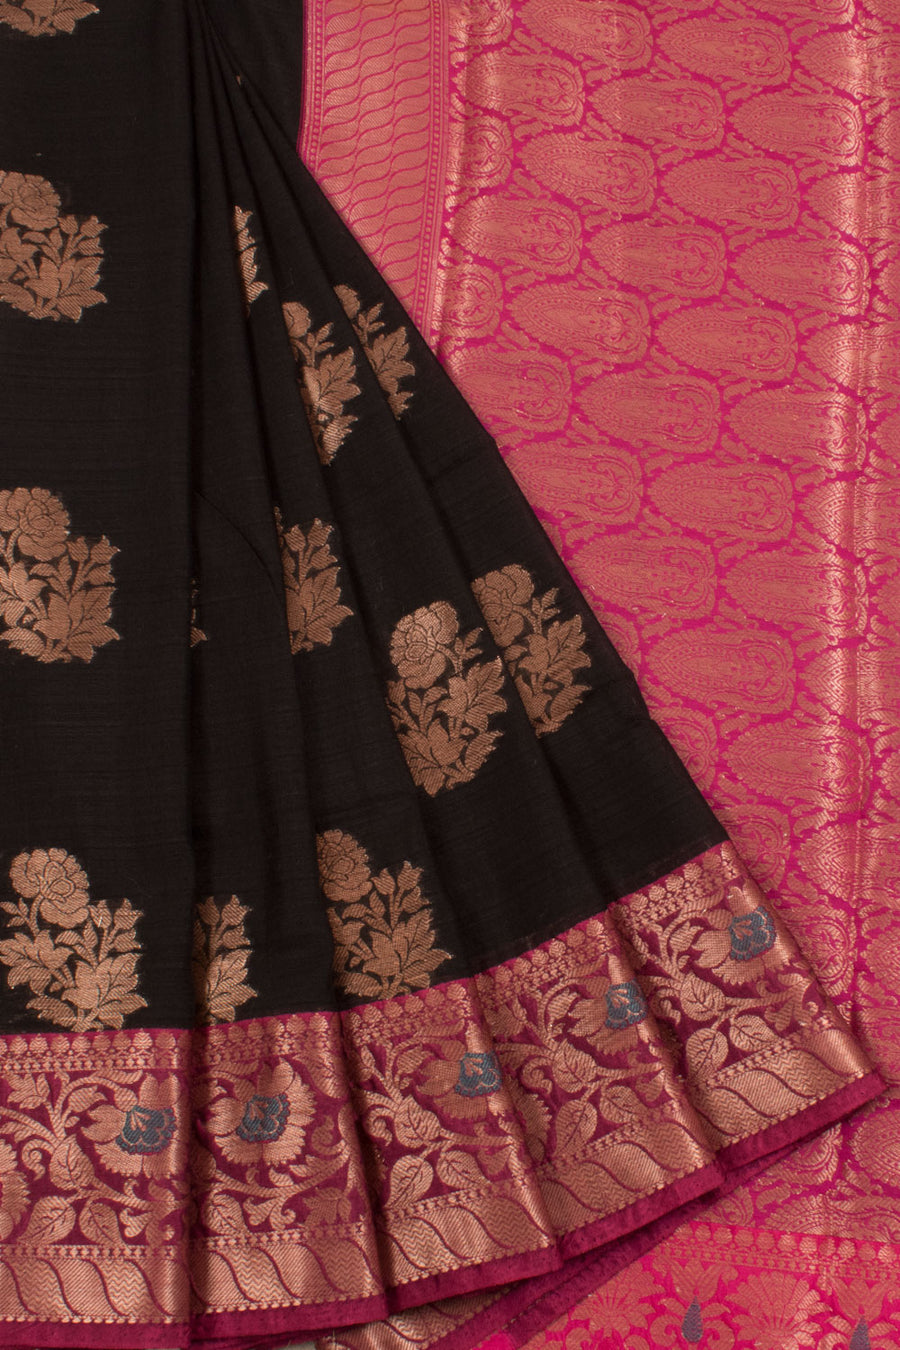 Banarasi Cotton Saree with Floral Motifs, Meenakari Border and Brocade Blouse